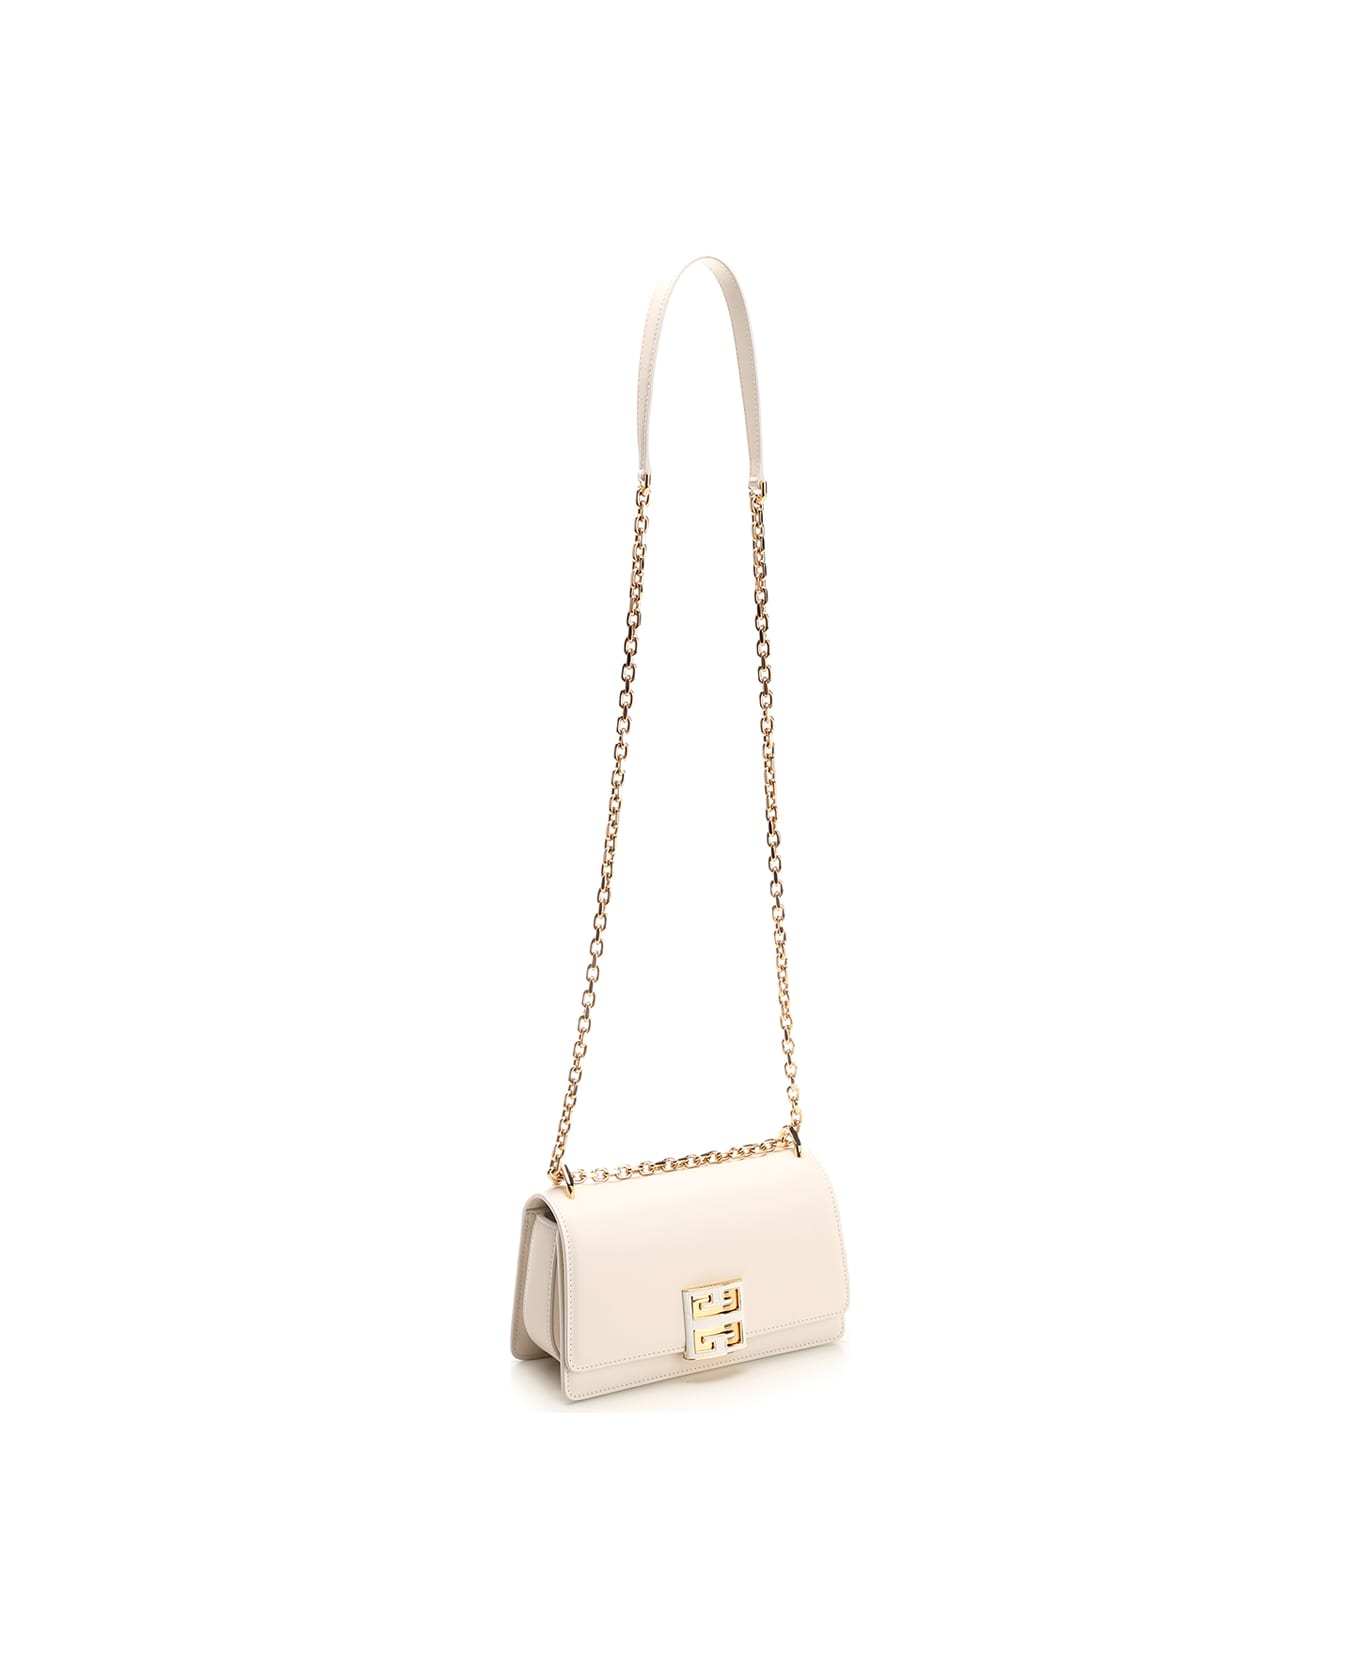 Givenchy 4g Small Shoulder Bag - White ショルダーバッグ